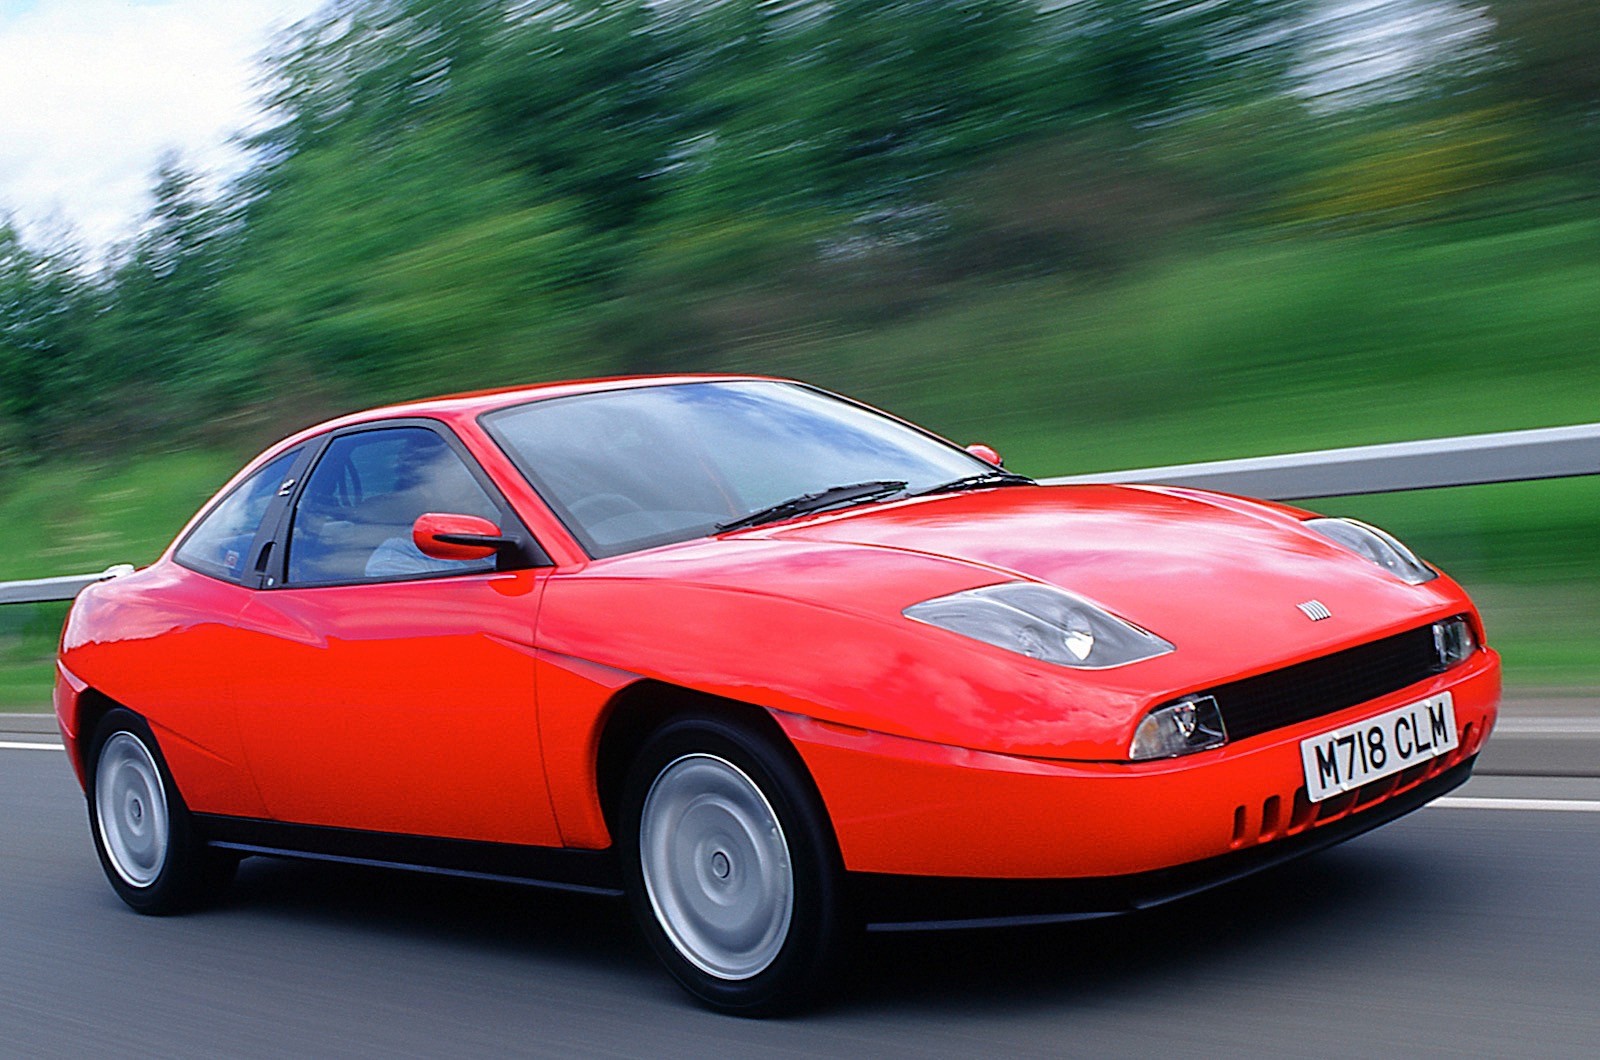 Fiat Coupe Ferrari подборка фото, распечатайте фото абсолютно бесплатно